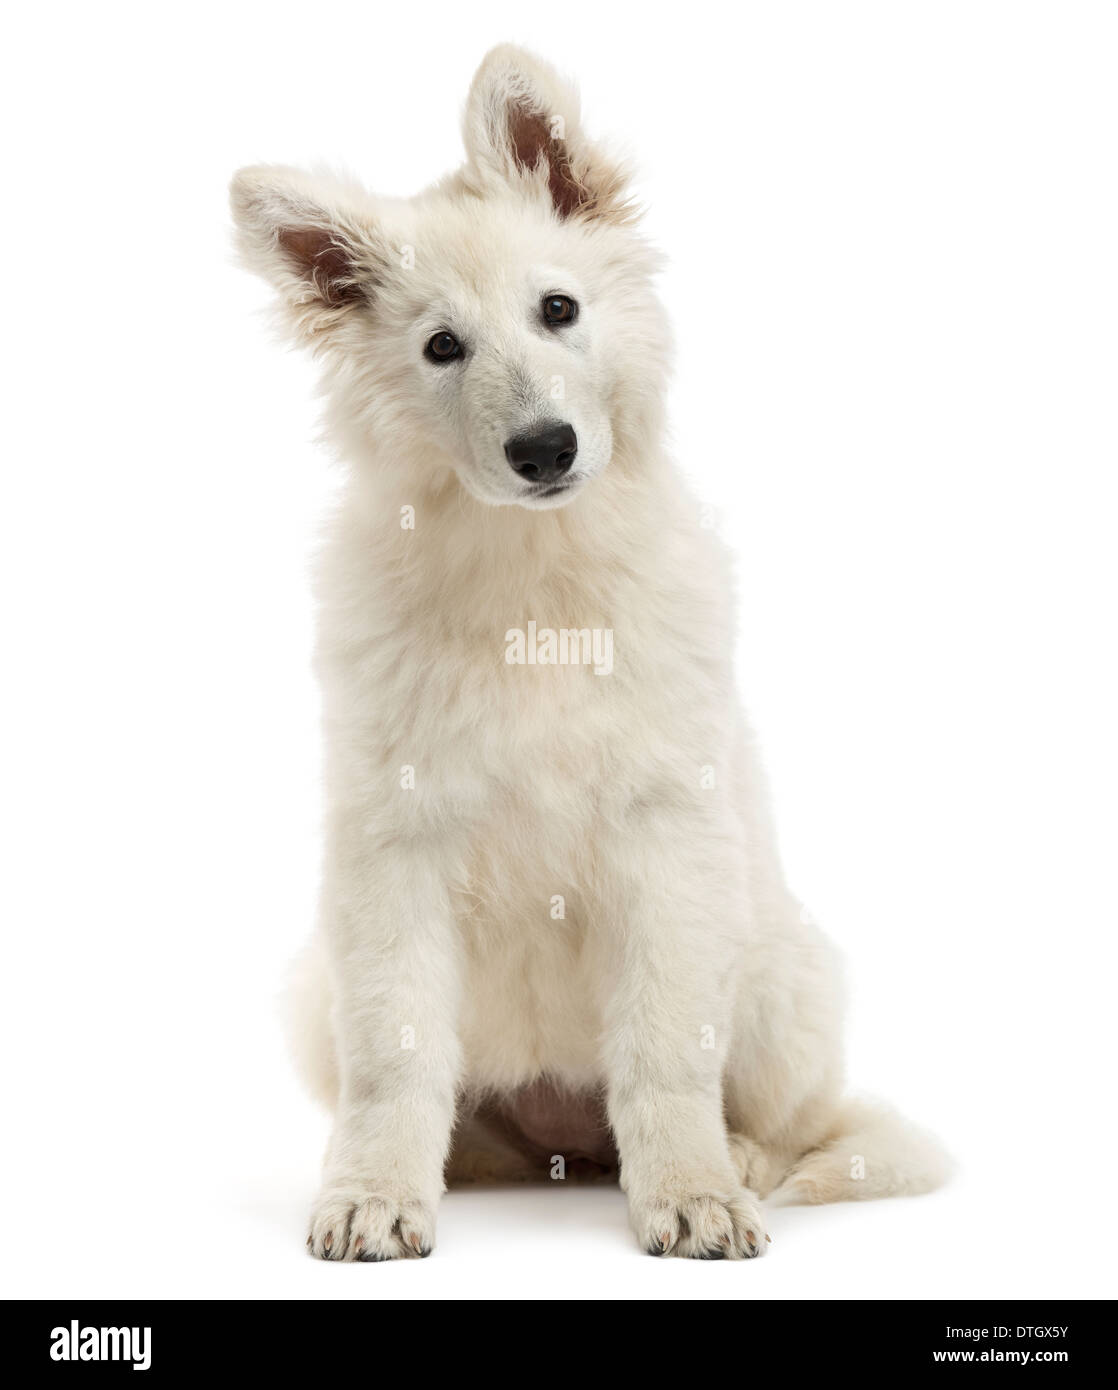 Swiss Shepherd Dog puppy sitting, regardant la caméra, 3 mois, contre fond blanc Banque D'Images